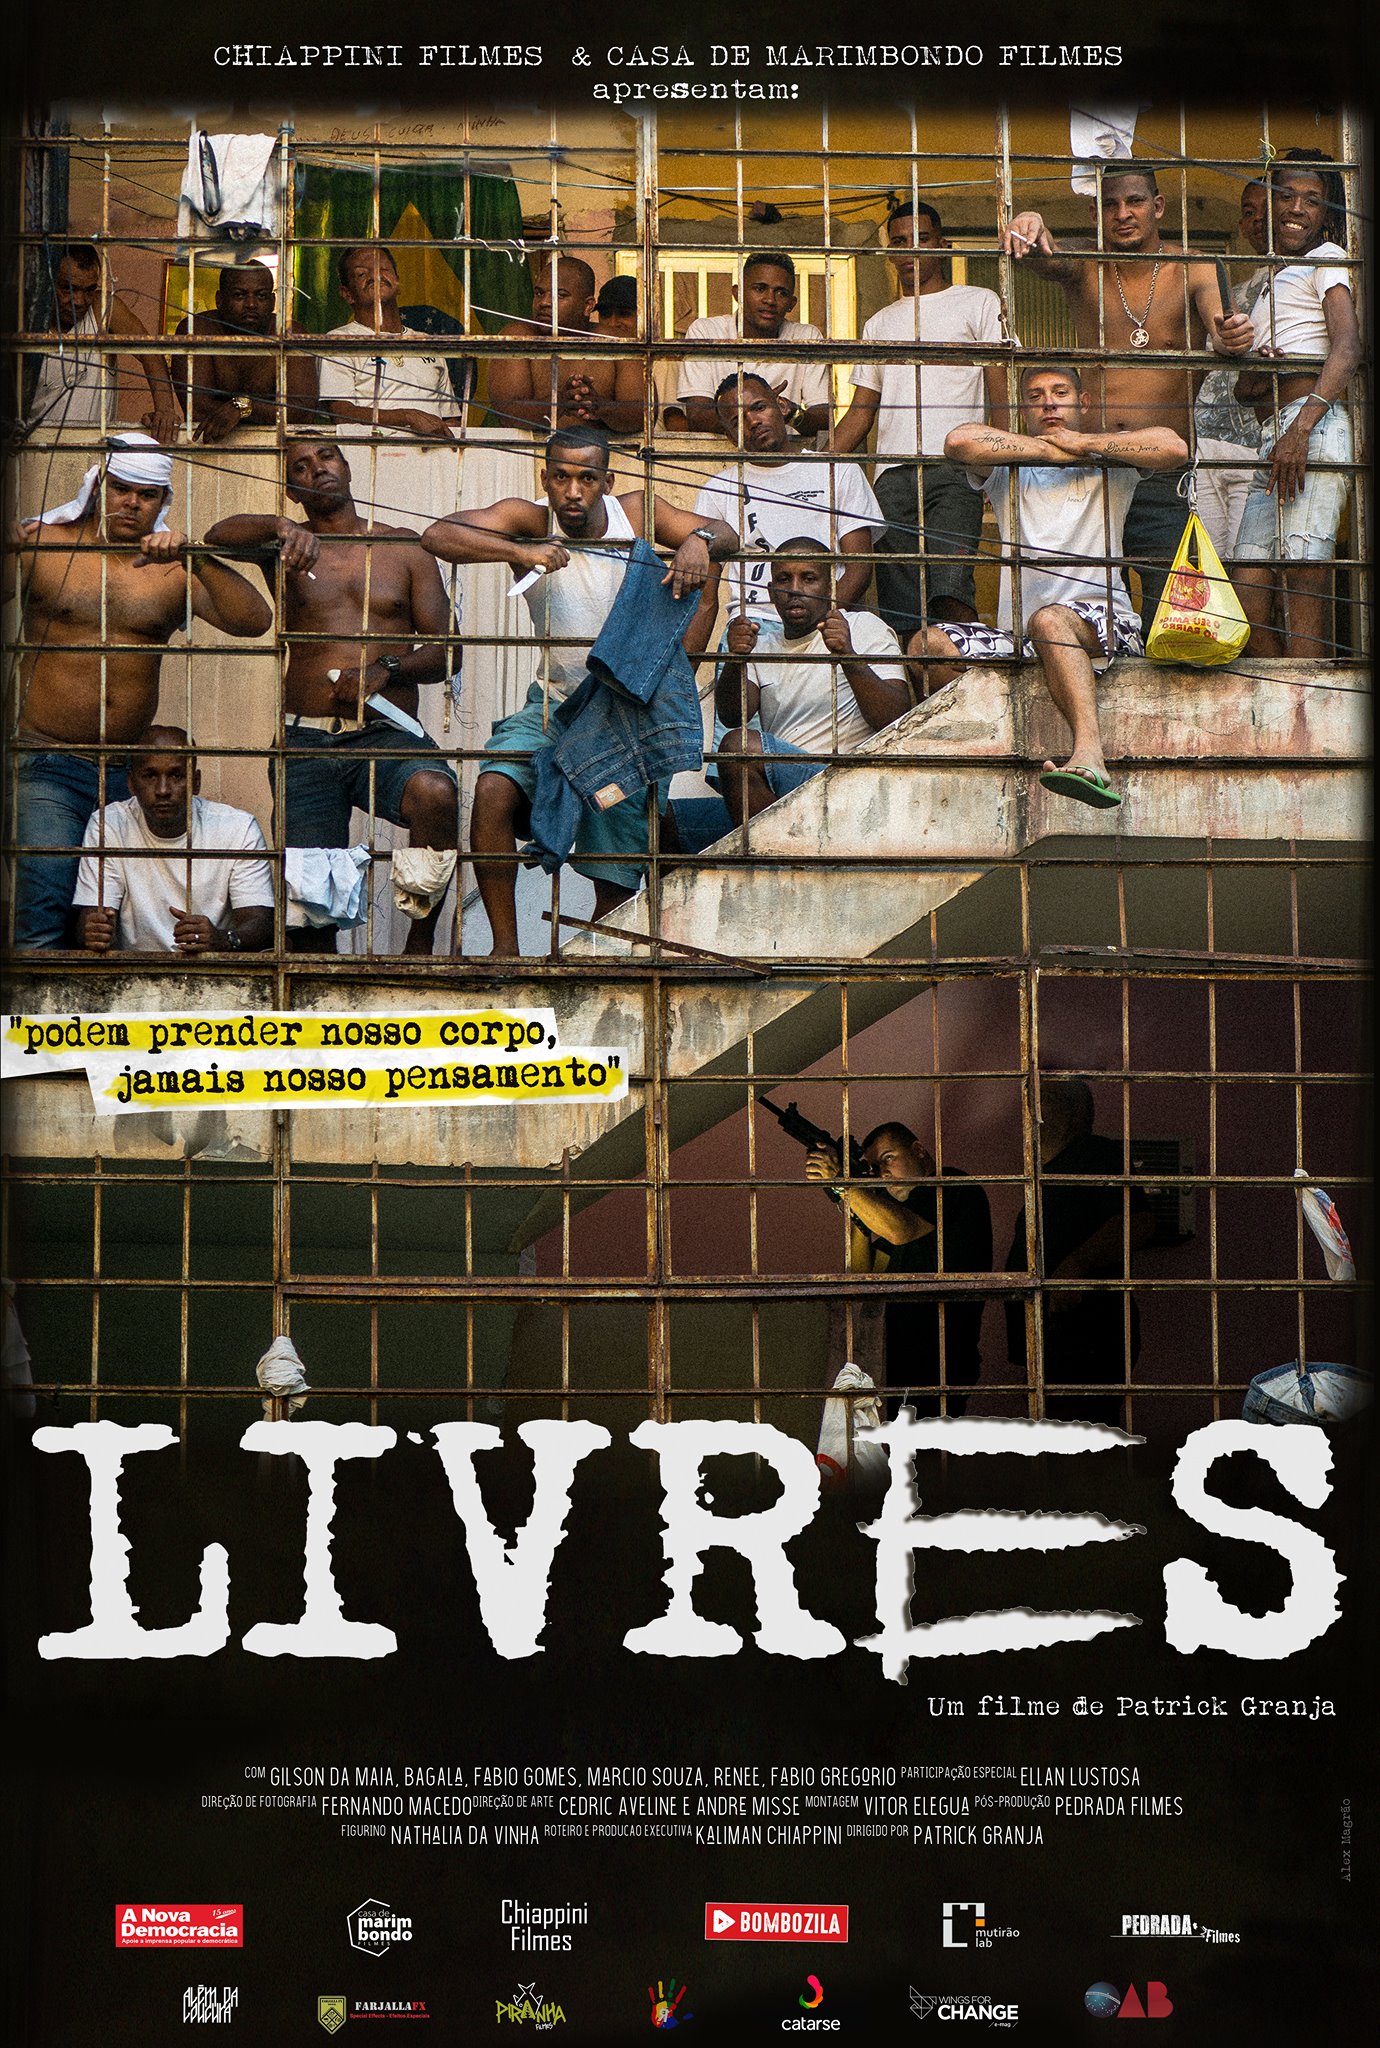 Filme idealizado por ex-detentos estreia no Festival do Rio dia 07